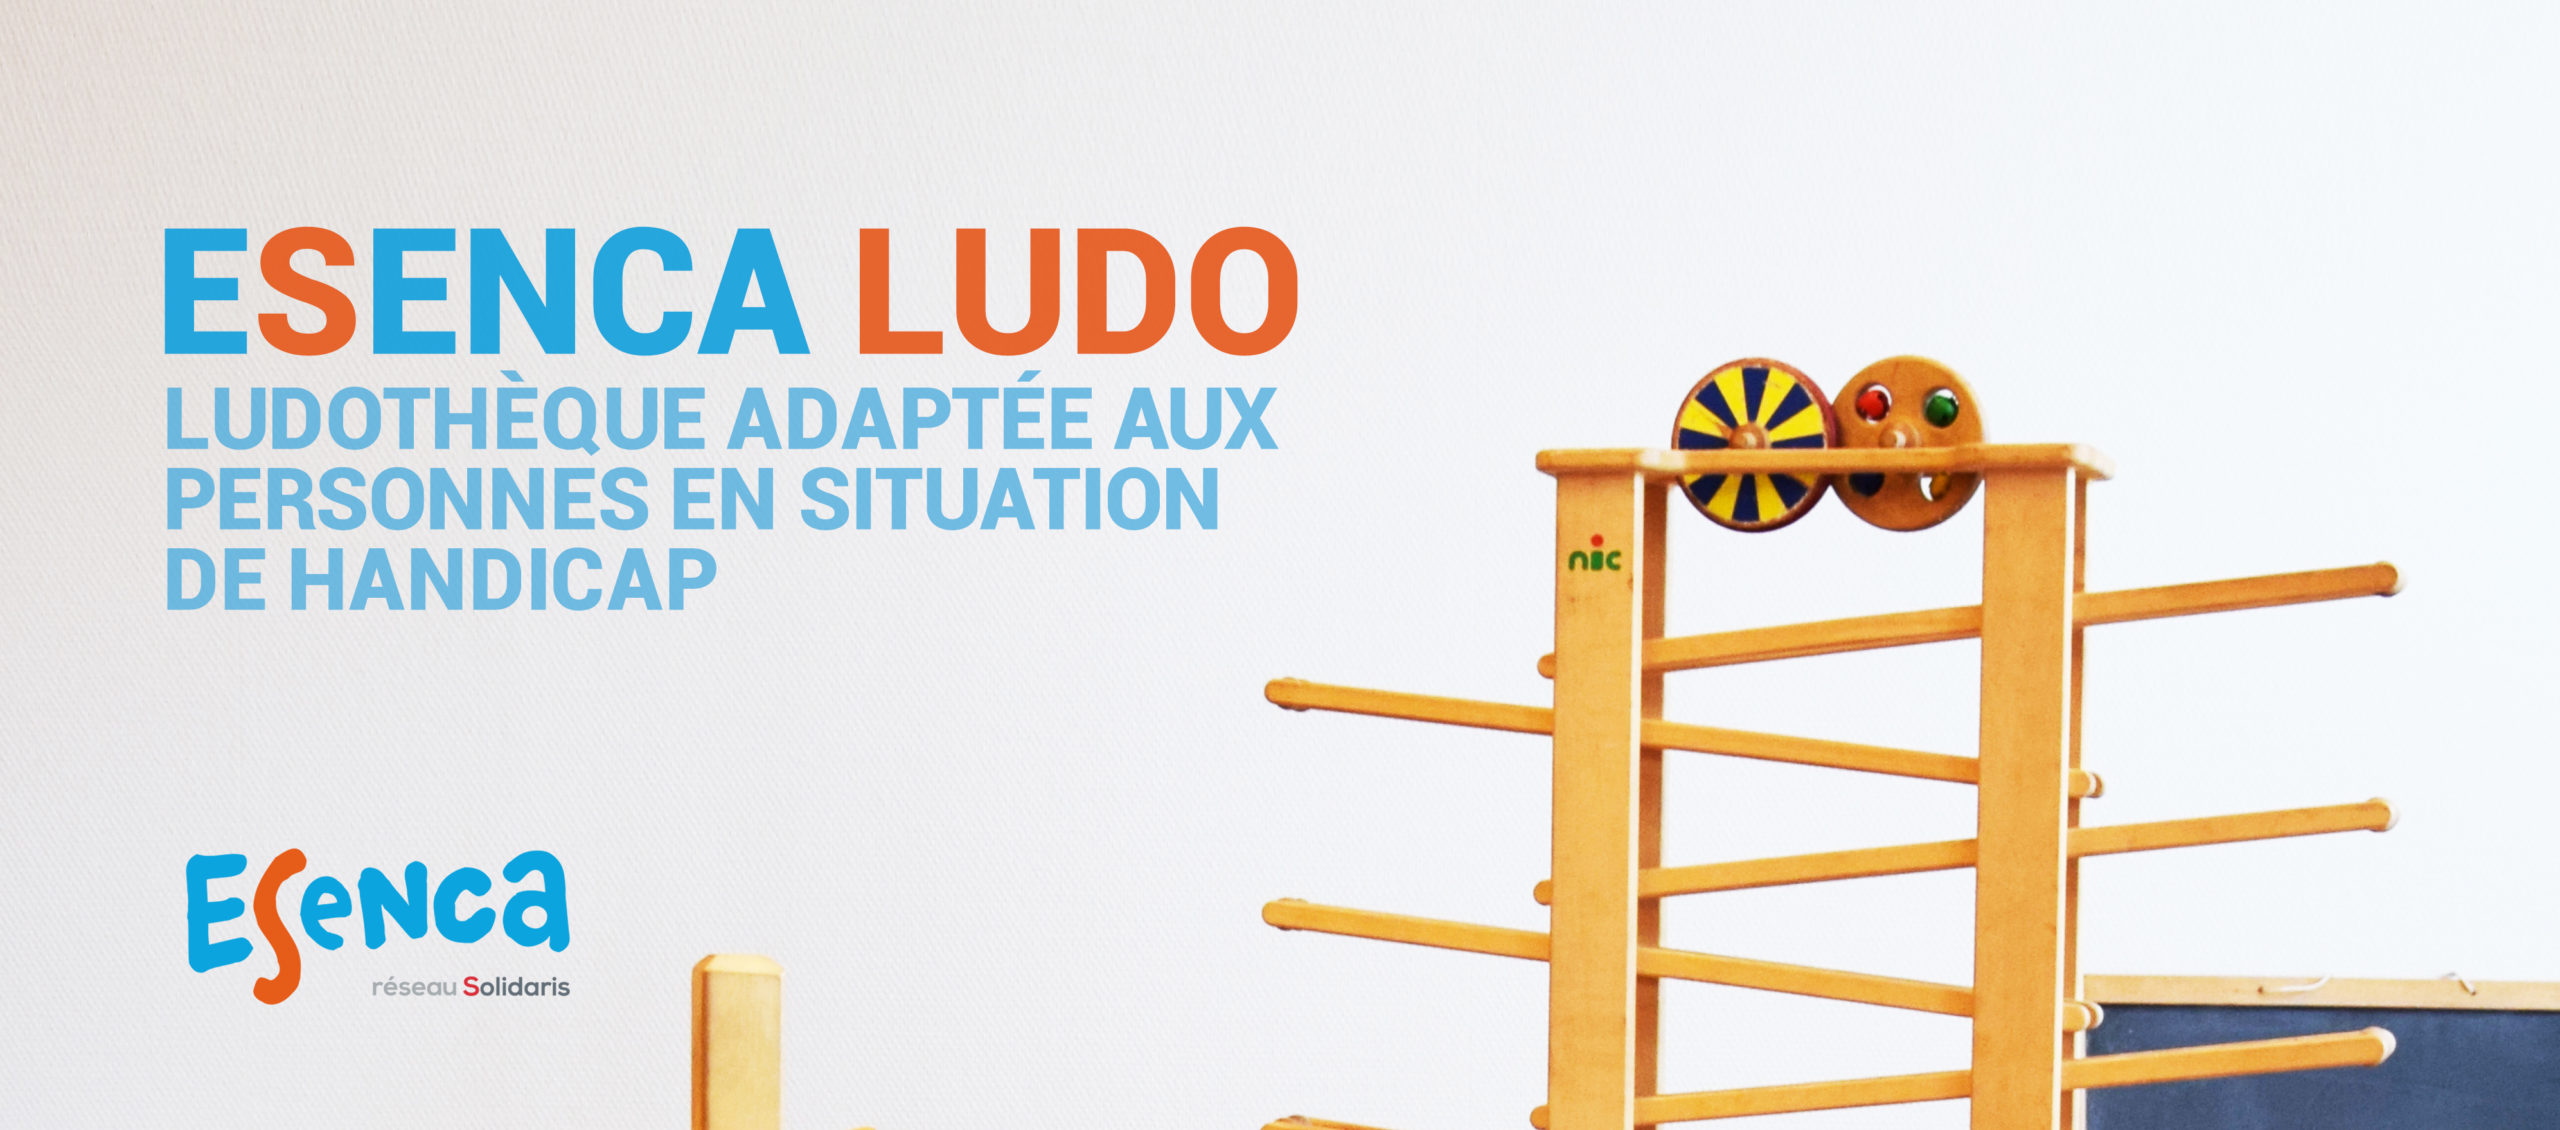 Esenca Ludo. Centre de prêt de jouets et de jeux ou ludothèque, adapté aux personnes en situation de handicap ou handicapées, par Esenca Liège.